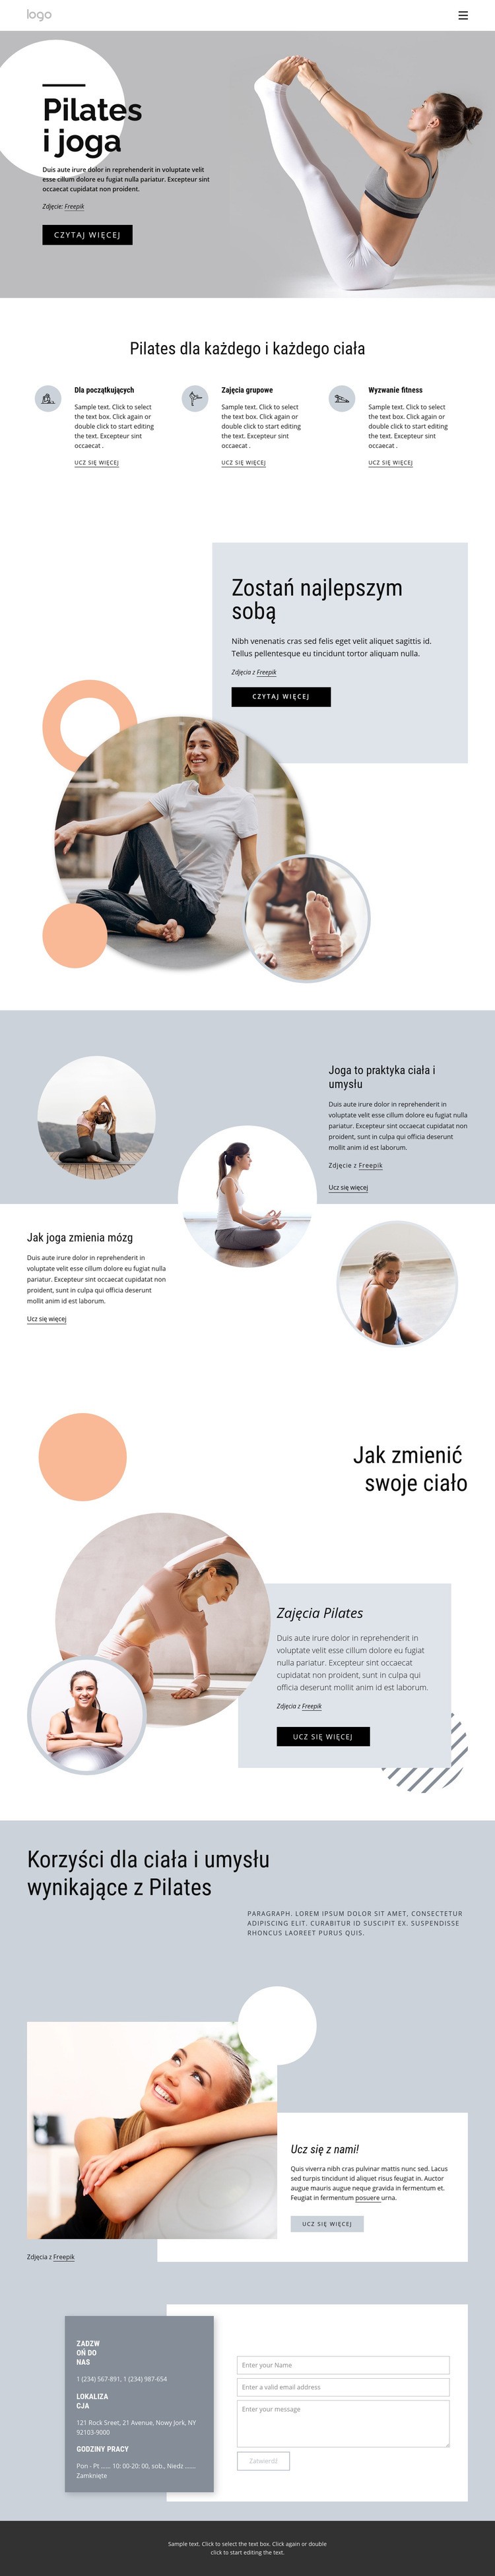 Pilates i centrum jogi Makieta strony internetowej